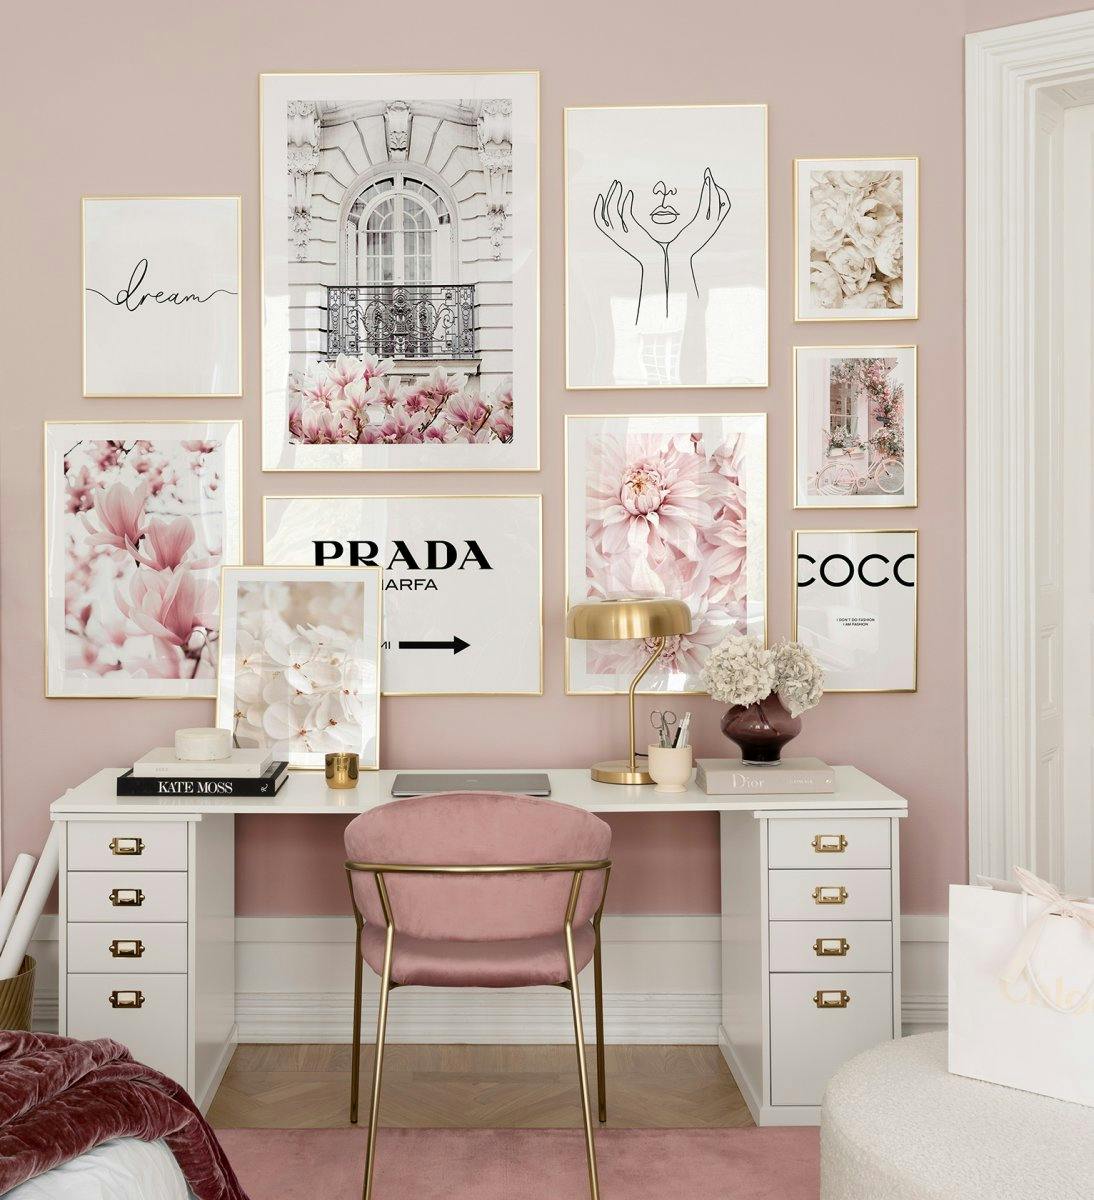 Bilderwand in Rosa mit hochwertigen Modemarken in Goldrahmen, die perfekt für das Homeoffice geeignet sind.